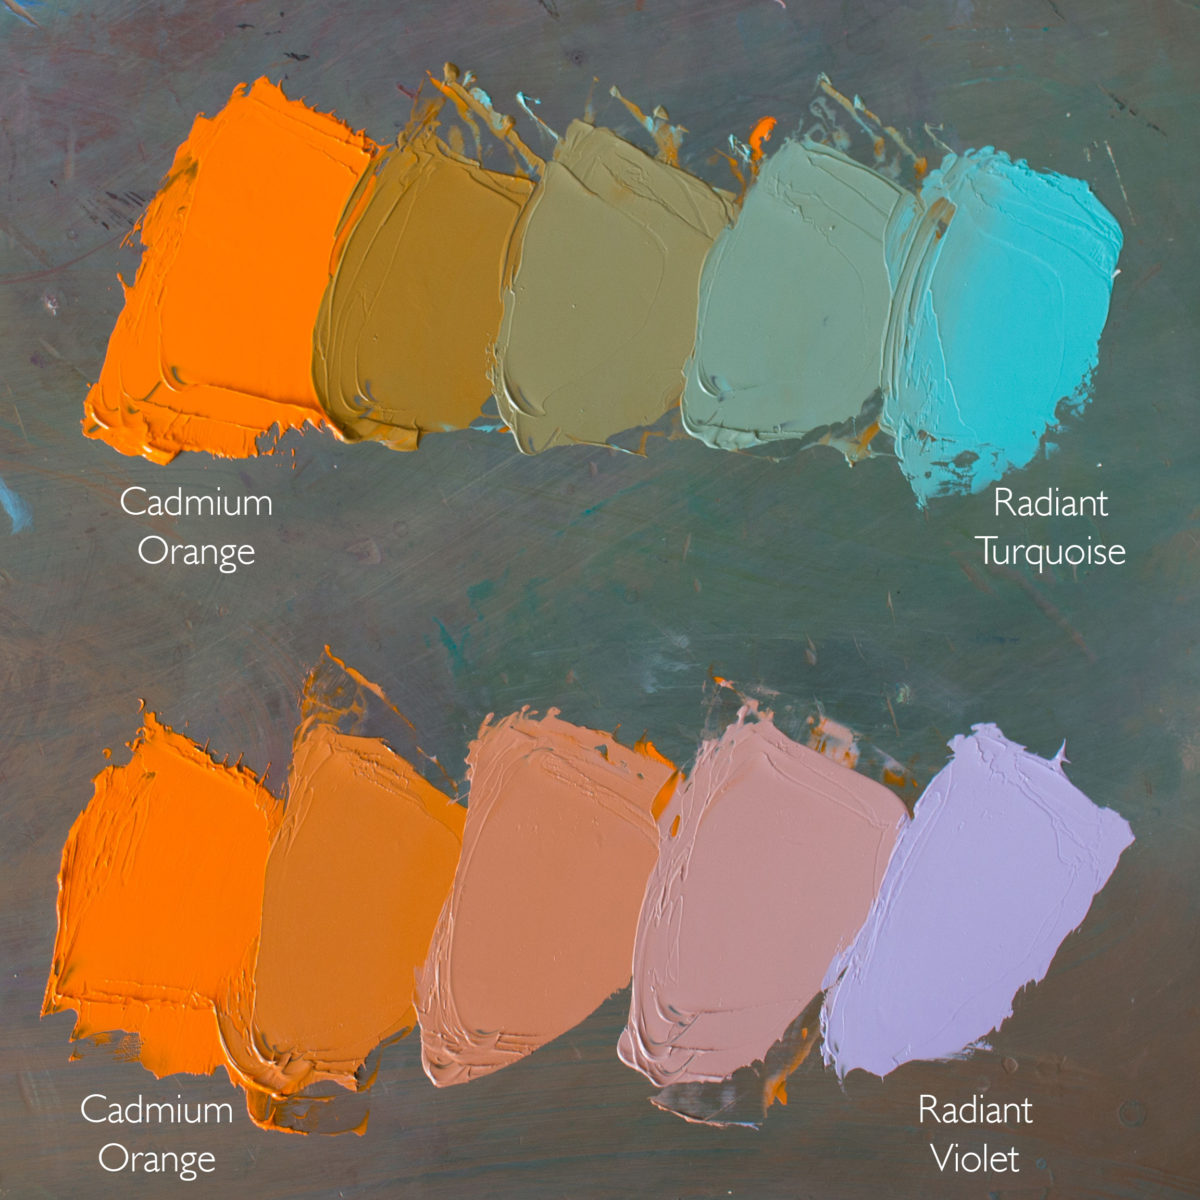 Cadmium-Orange-and-Radiant-Turquoise,-Cadmium-Orange-and-Radiant-Violet